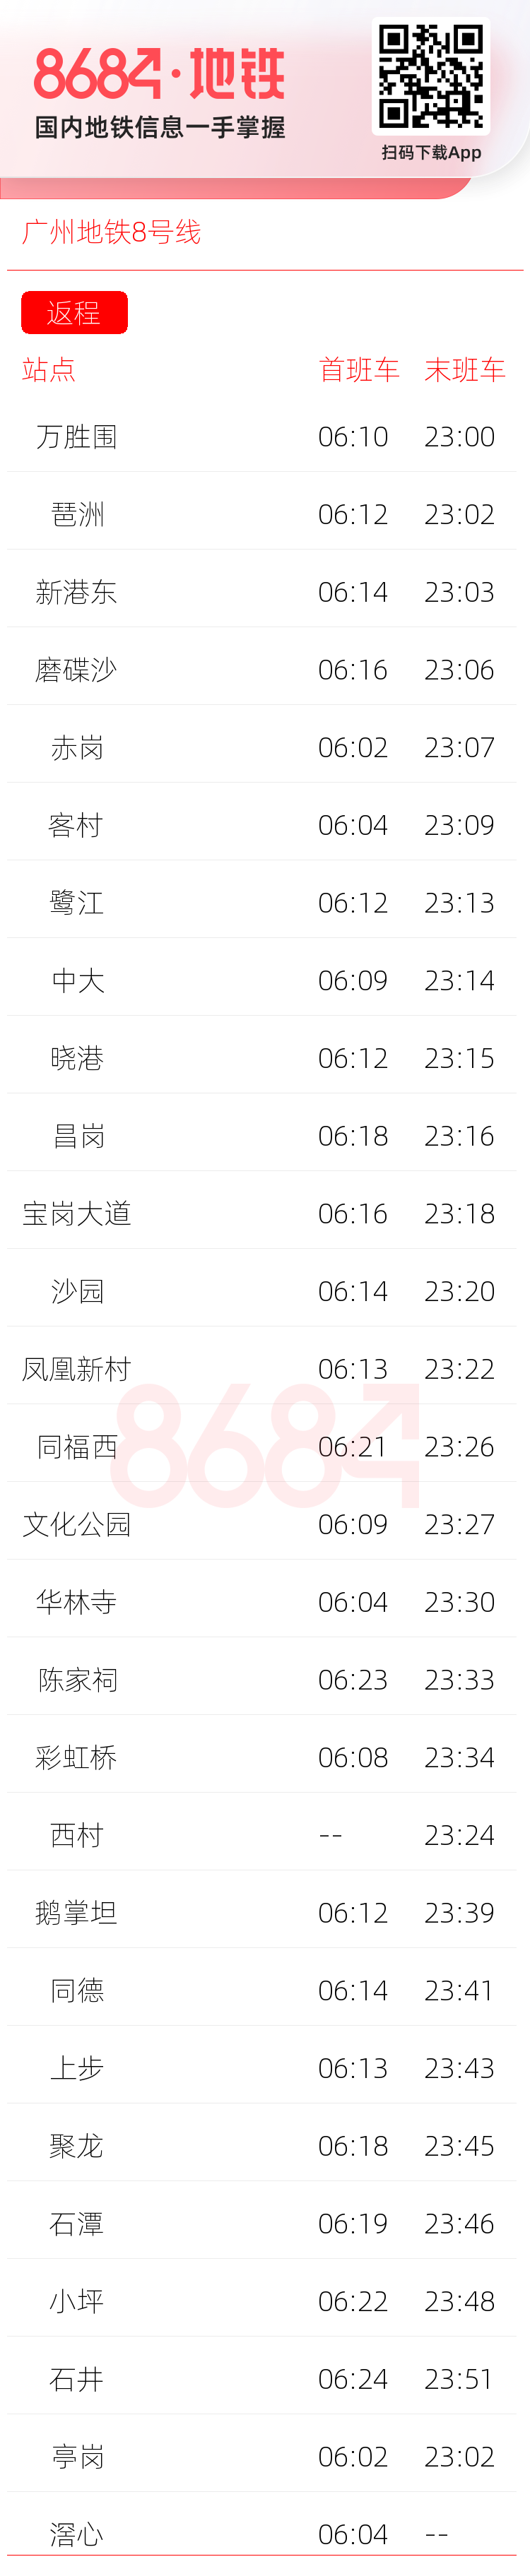 广州地铁8号线运营时间表